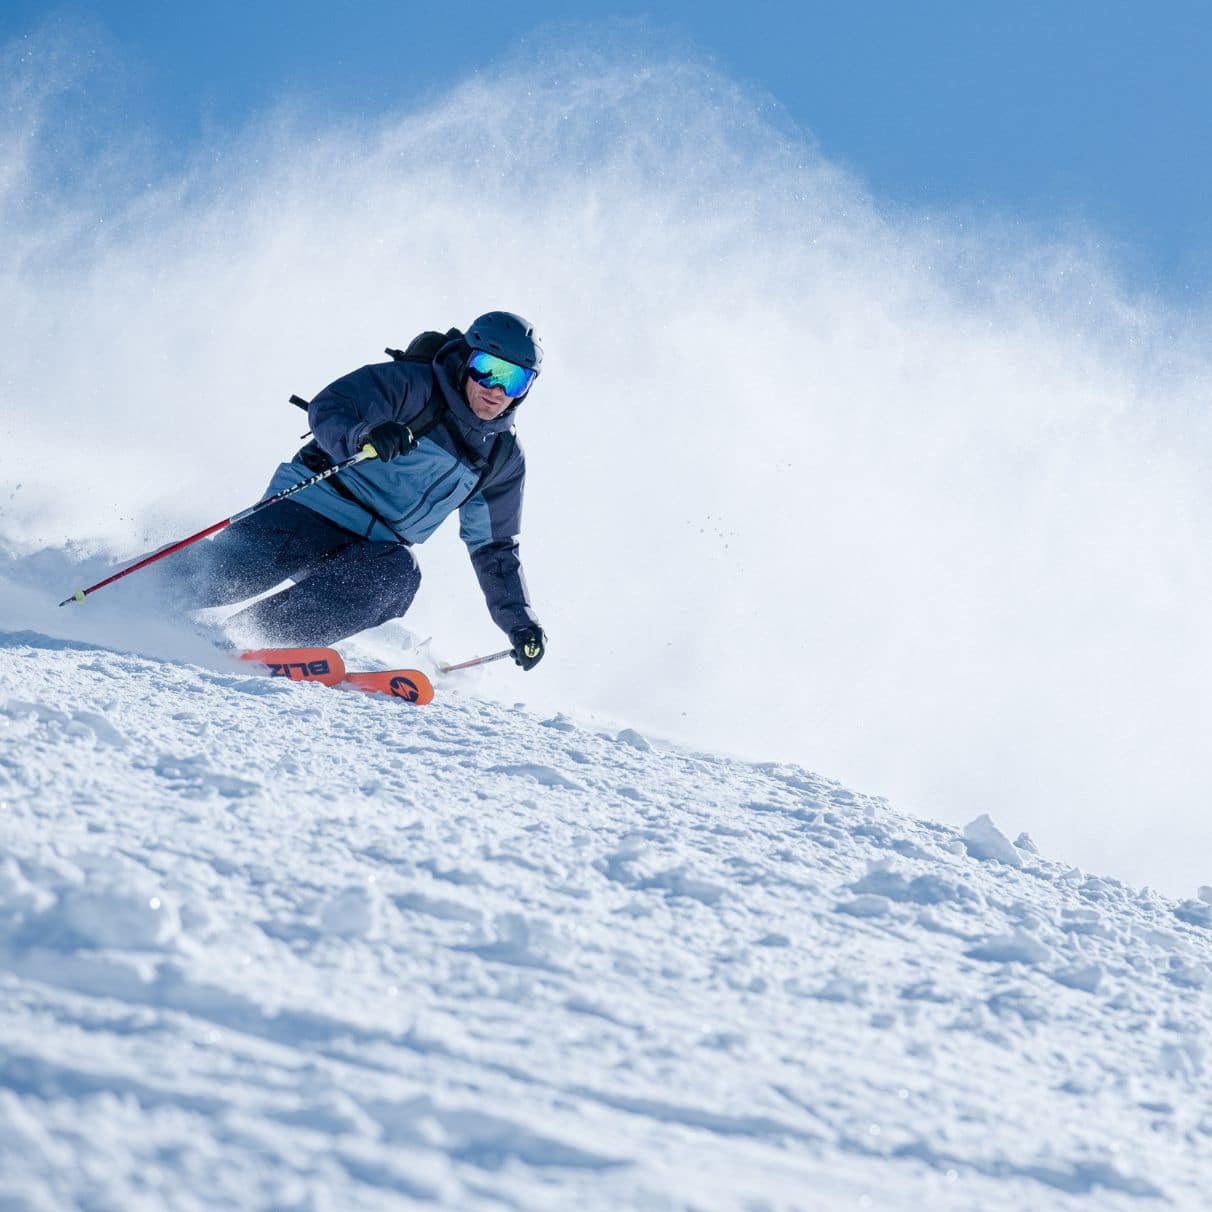 Cette marque française de ski iconique revient en force cet hiver